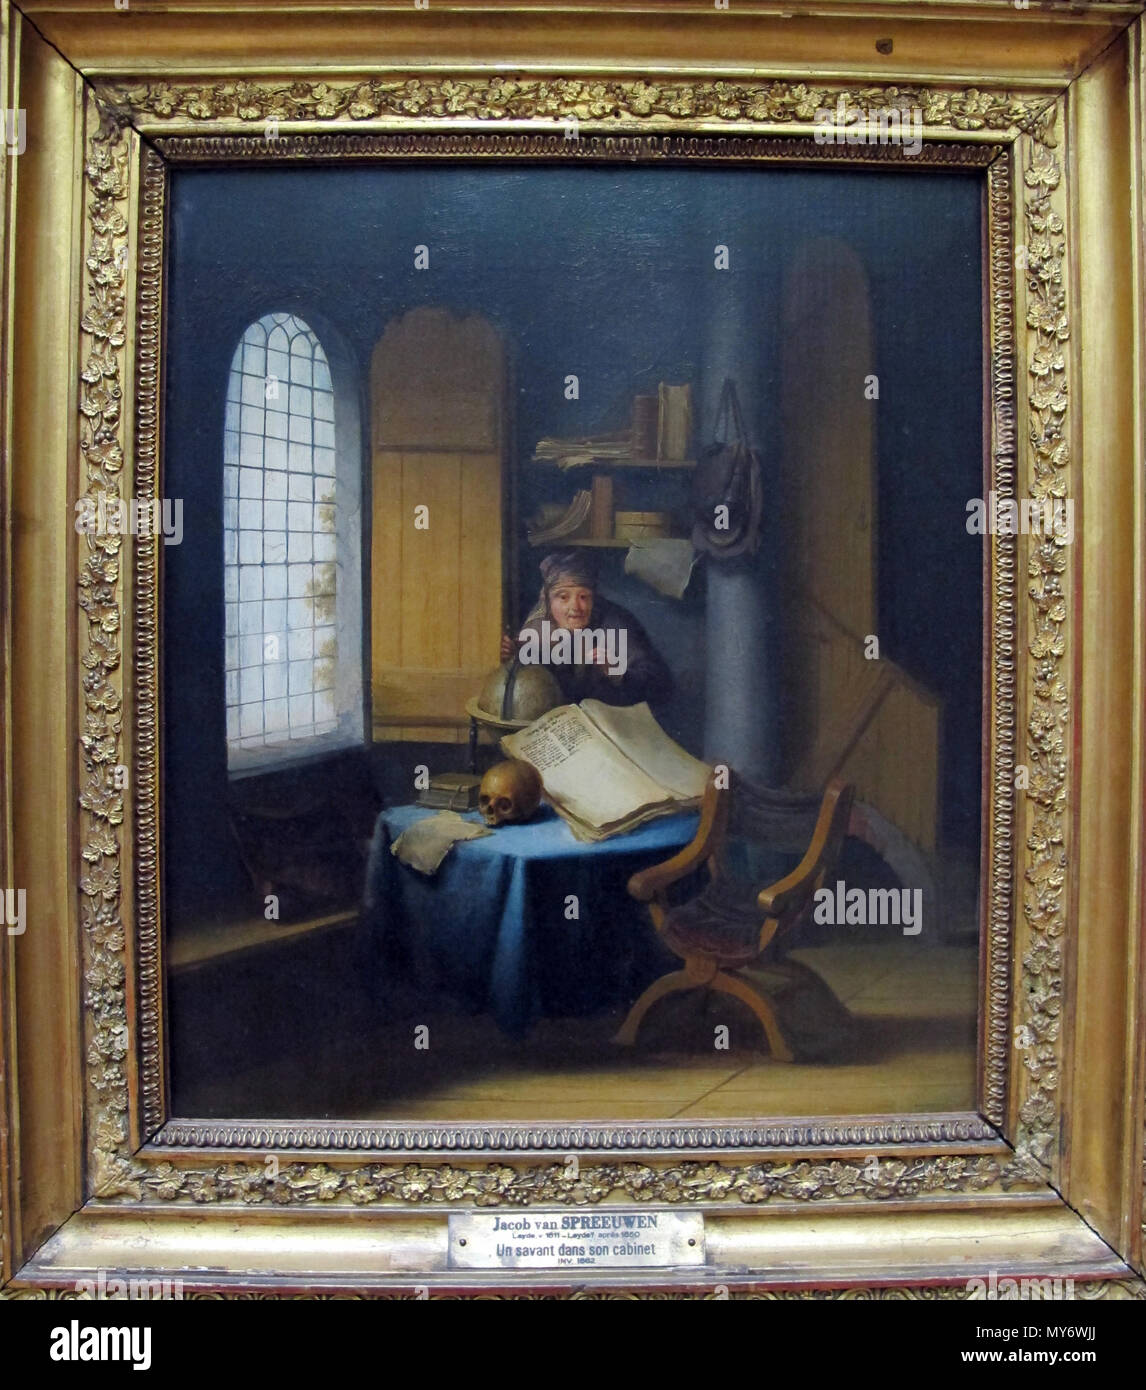 264 Jacob van spreeuwen, uno scienziato nel suo studio con lezione di vanità, 1630 ca. 01 Stock Photo